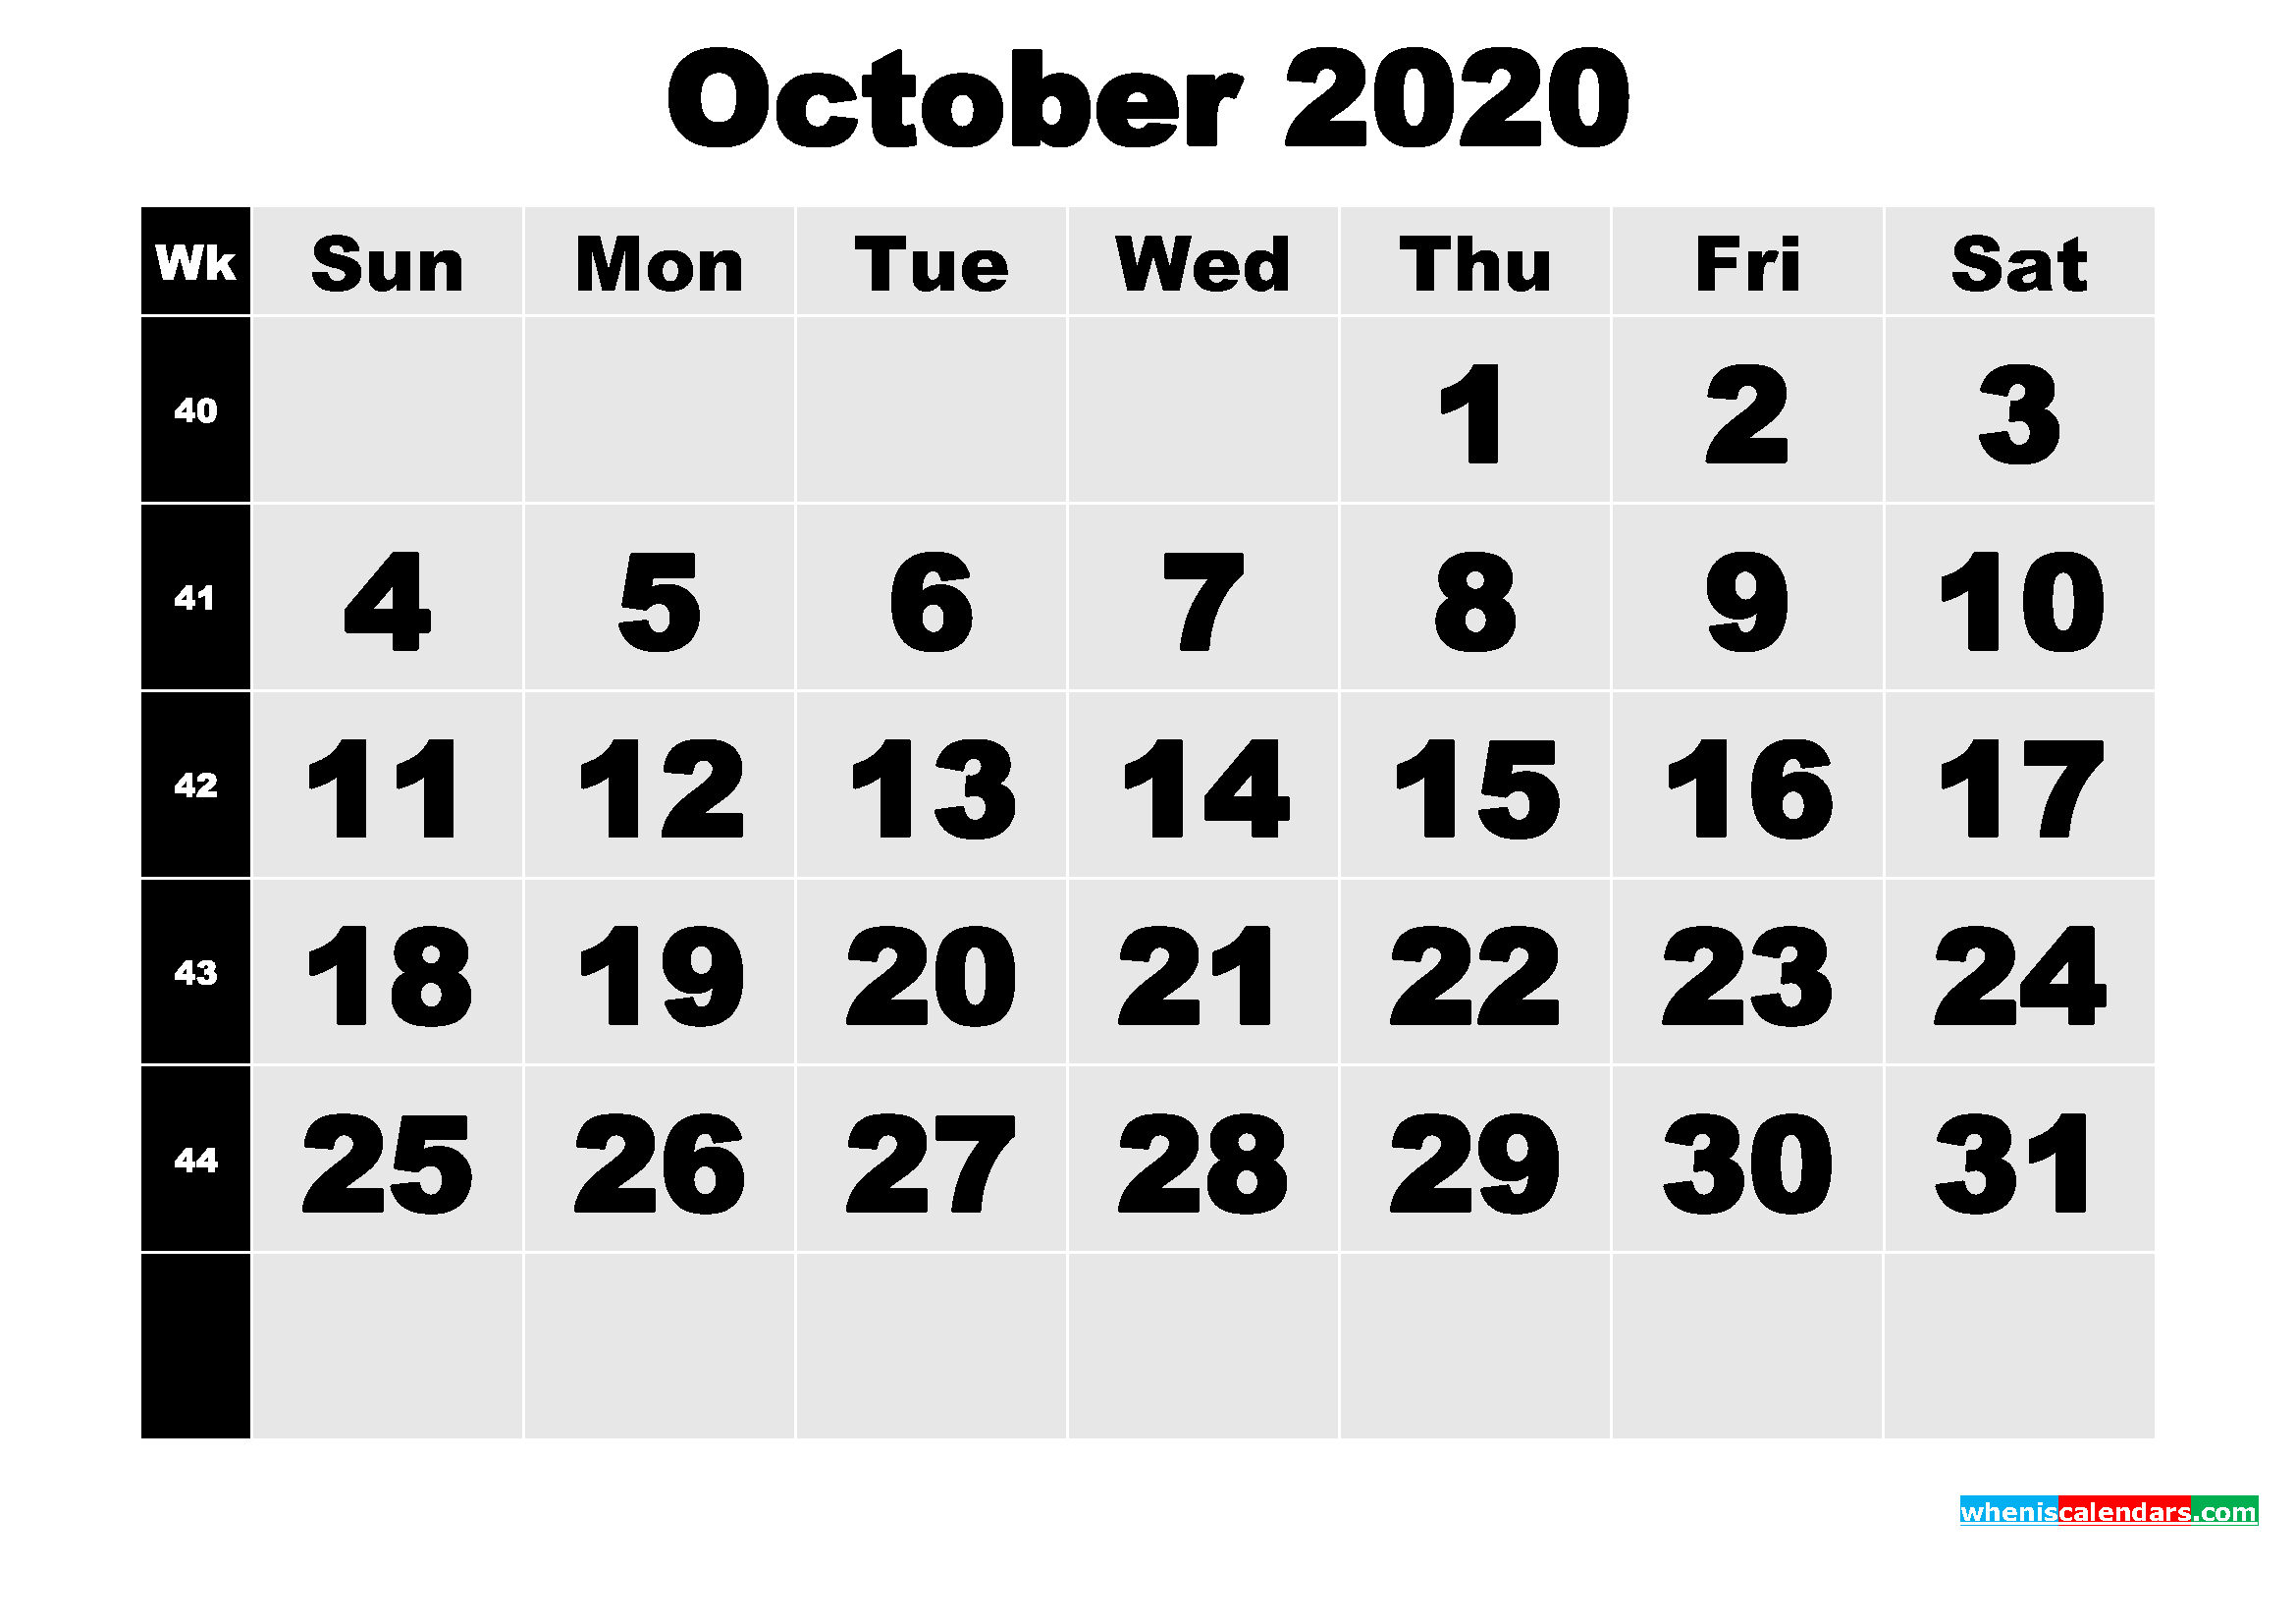 Free Printable October 2020 Calendar with Week Numbers